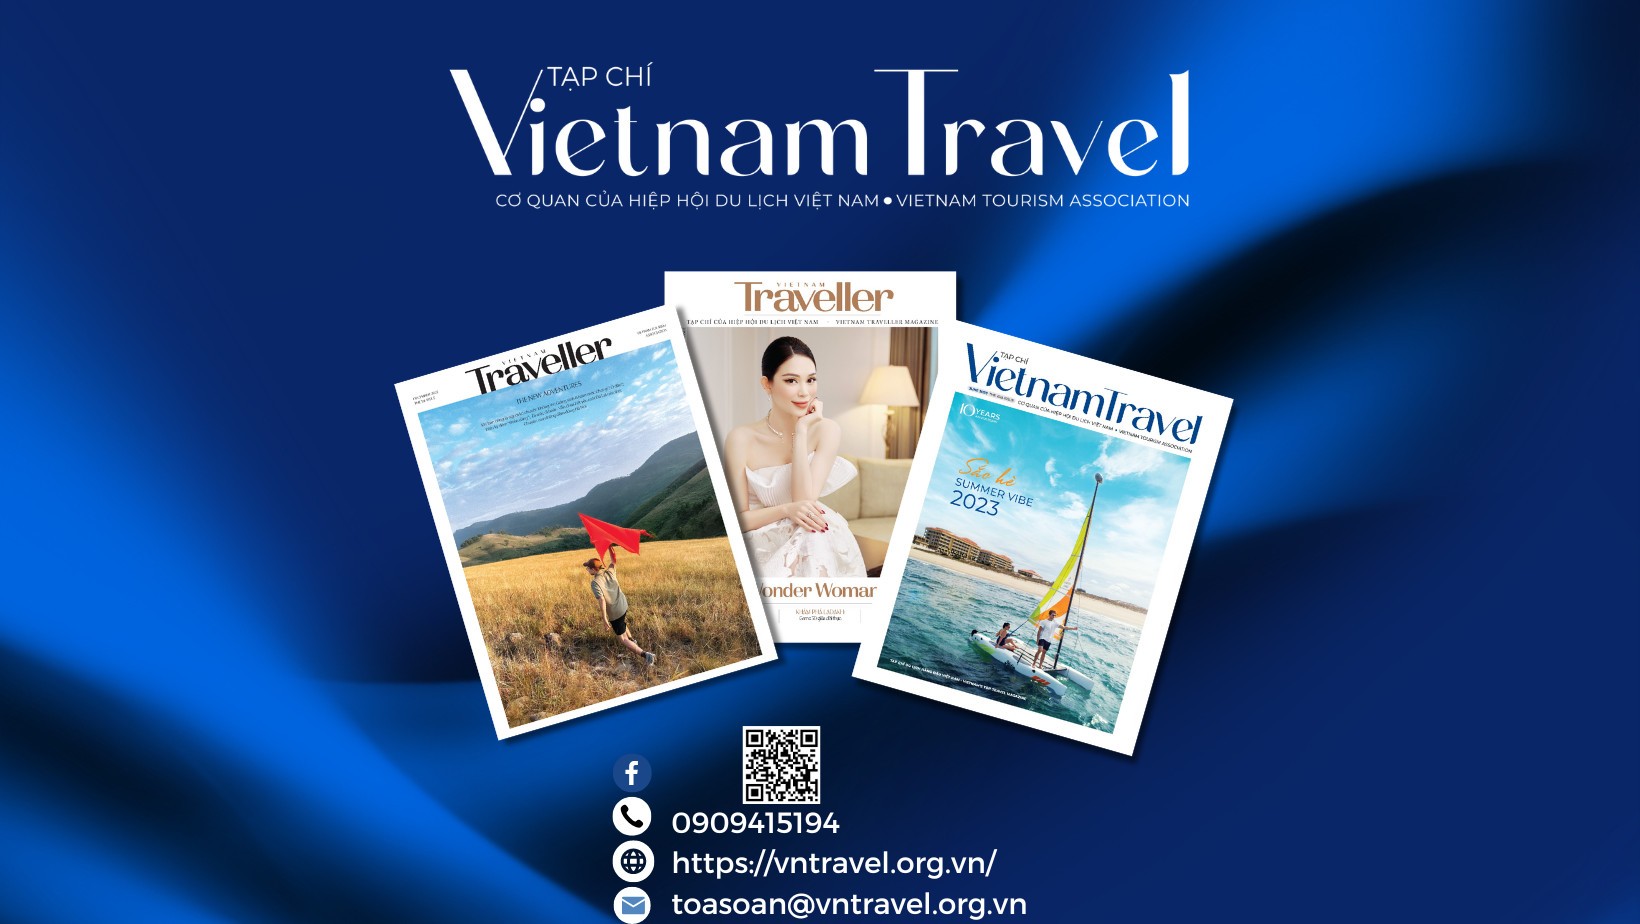 VietnamTravel - Tạp chí Du lịch Việt Nam - Cơ quan ngôn luận của Hiệp hội Du lịch Việt Nam